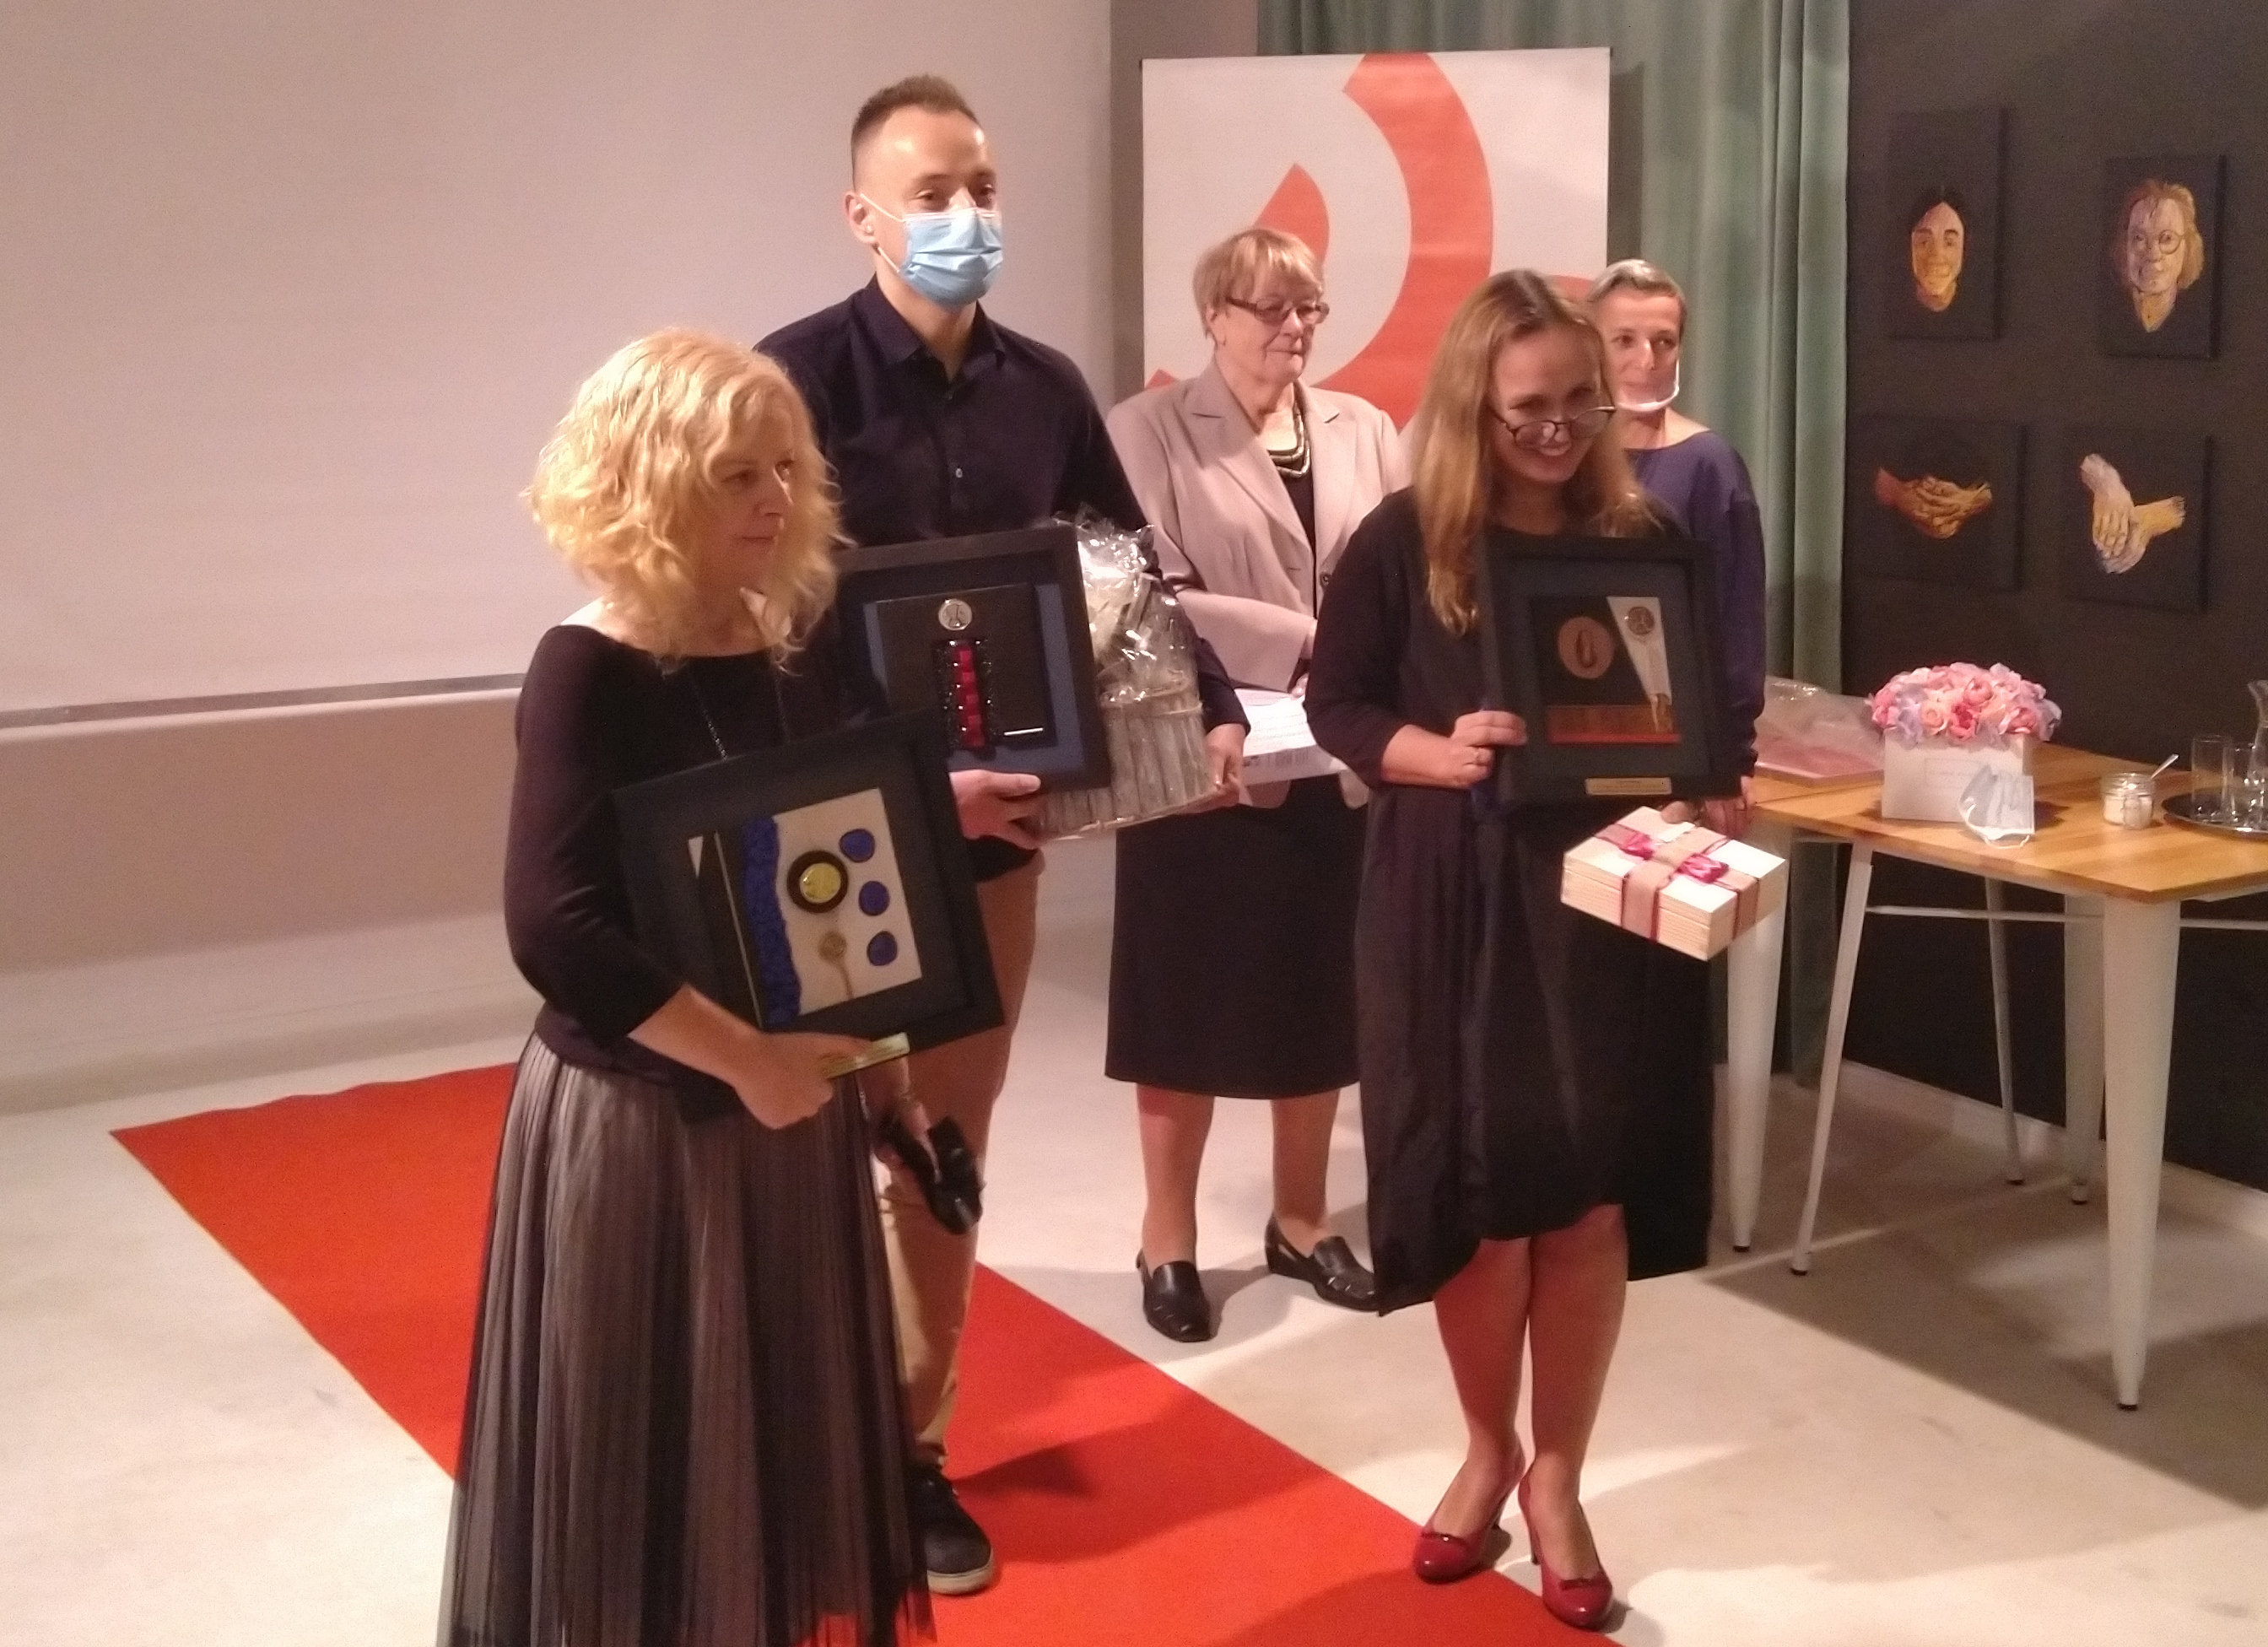 Laureaci konkursu "Twarze Ubóstwa" w trakcie Gali rozdania nagród: Aleksandra Warecka, Marek Szymaniak, Edyta Krzeniak